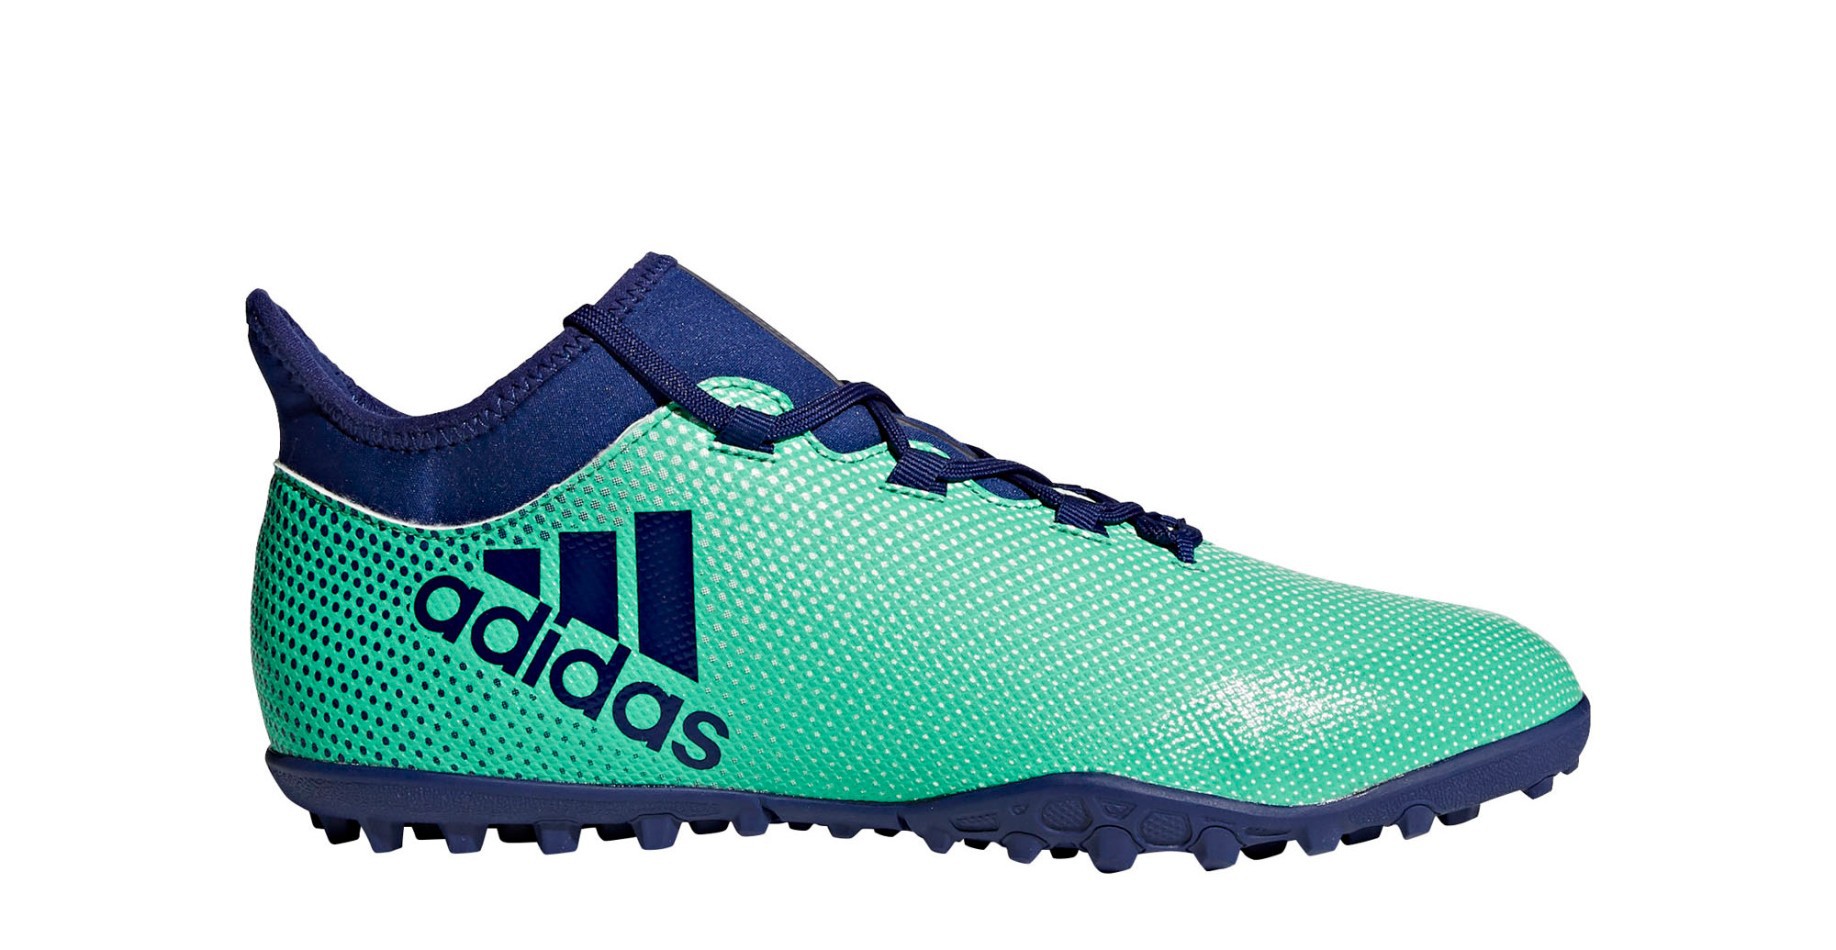 Zapatos de Fútbol Adidas X 17.3 Tango TF Huelga Pack colore verde - Adidas SportIT.com